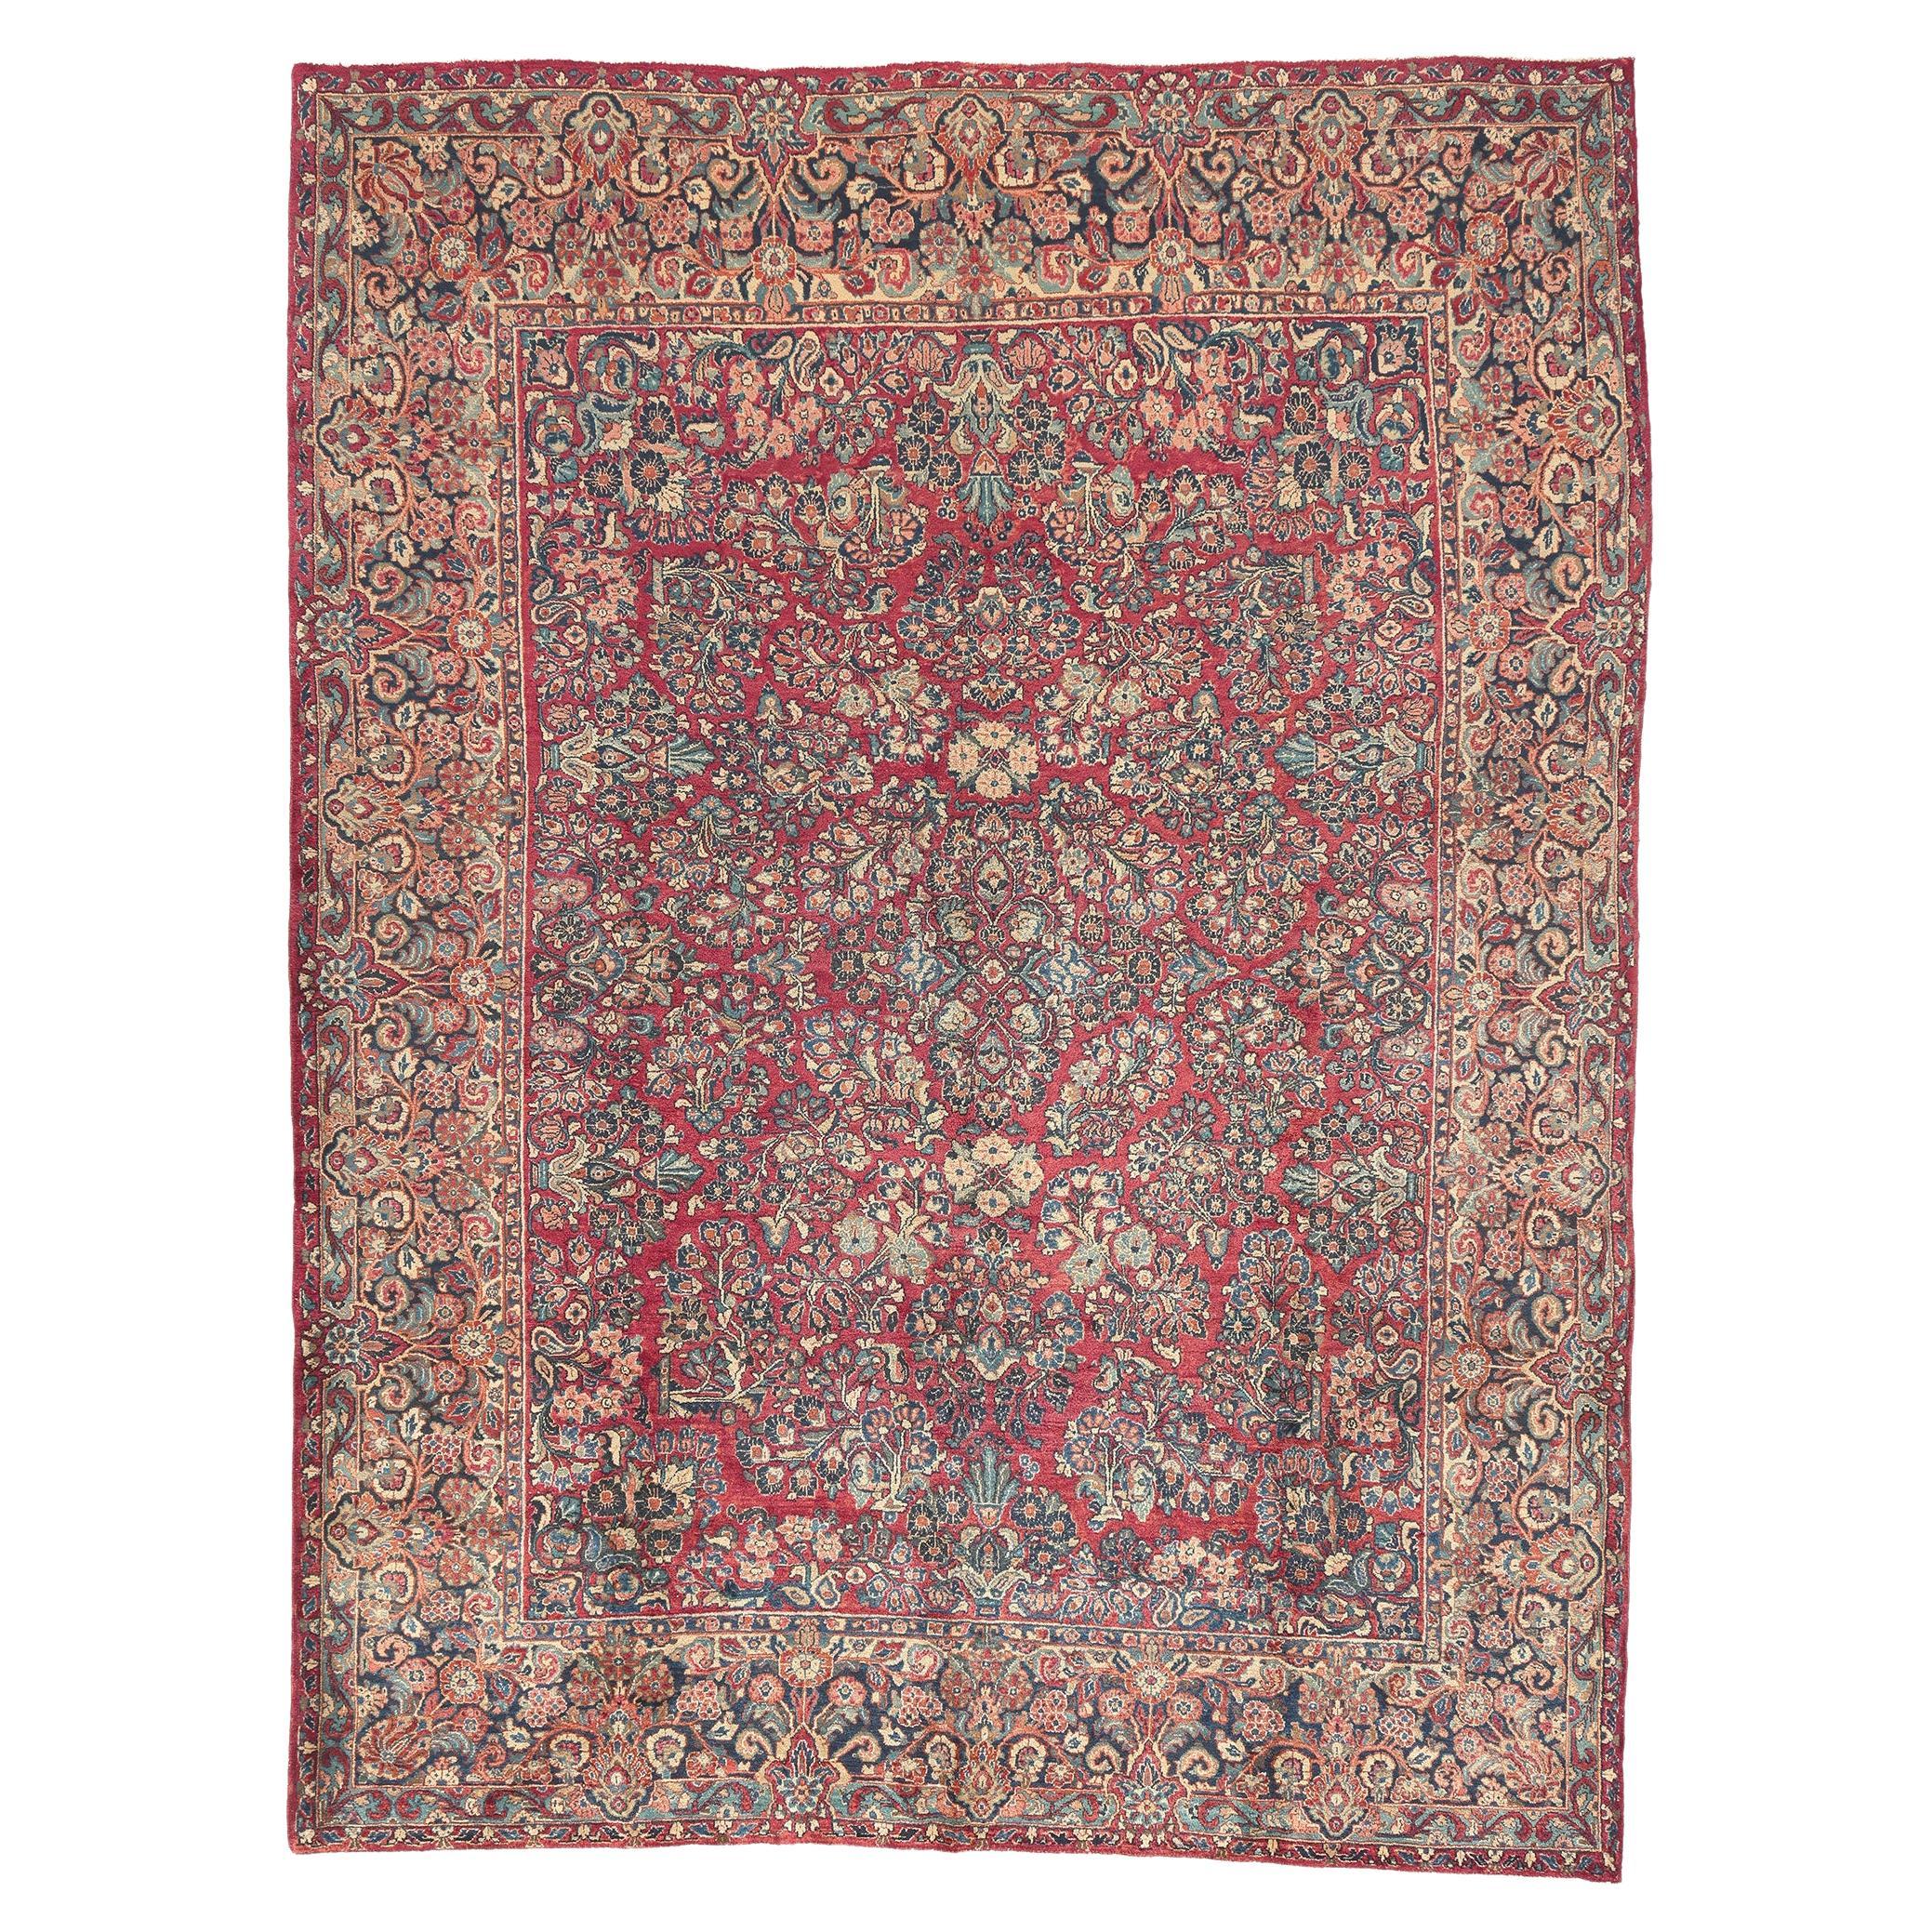 Antiker persischer Sarouk-Teppich, zeitlose Eleganz trifft auf Jugendstil